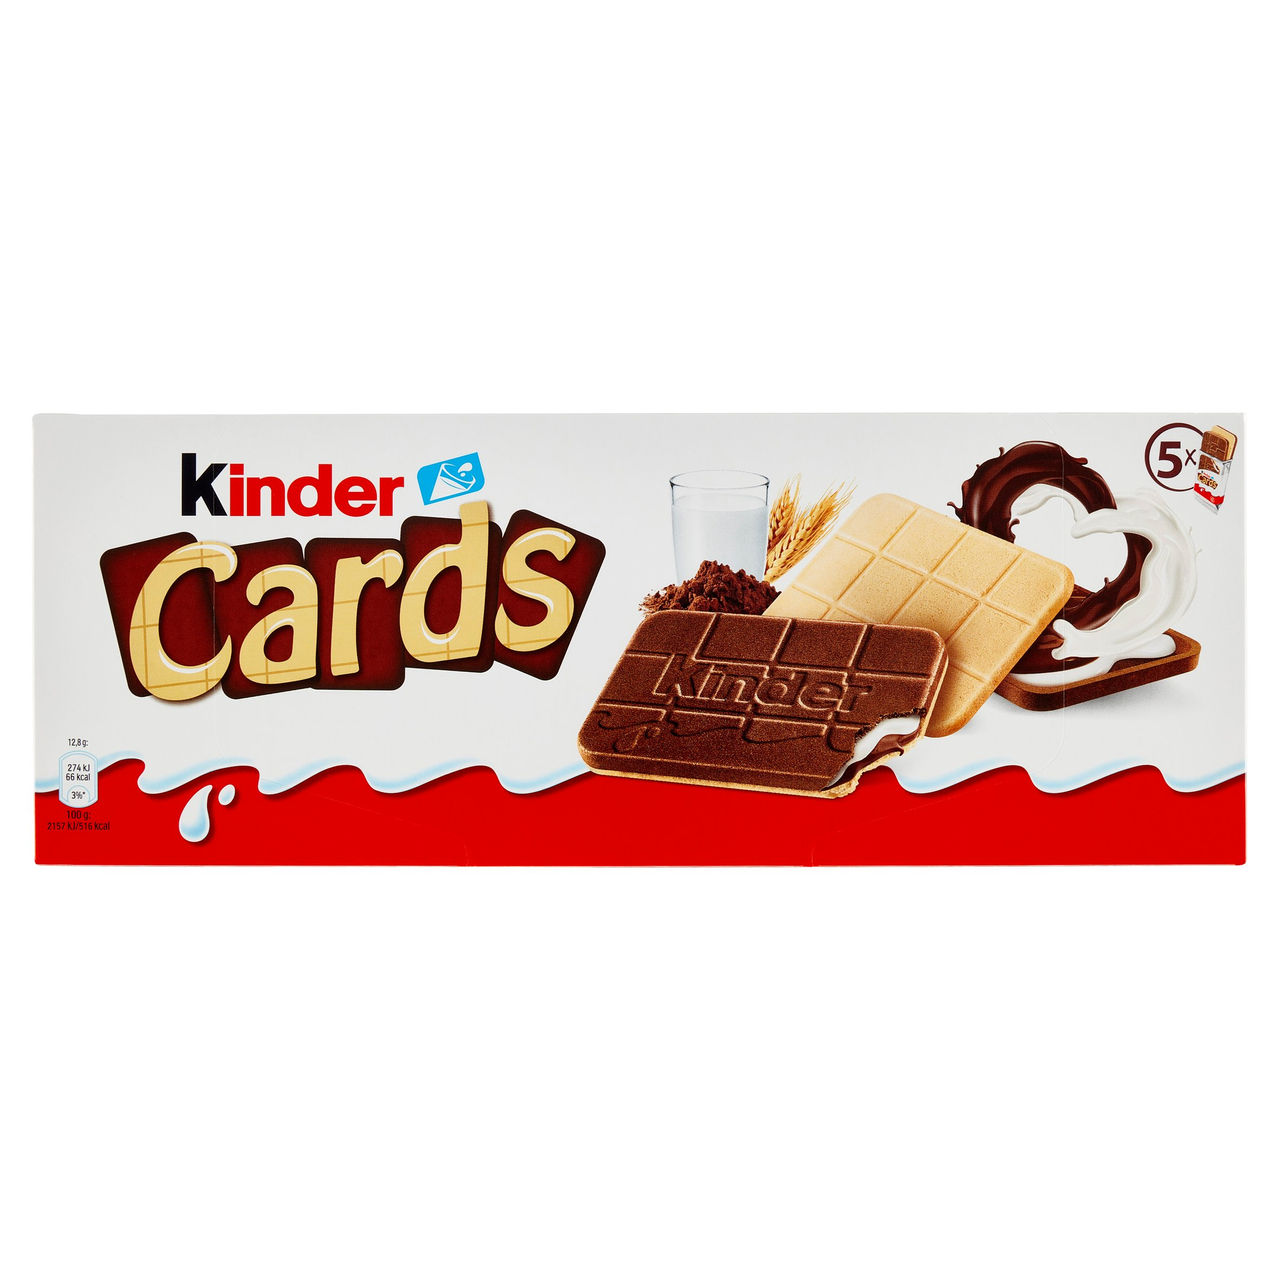 Kinder Cards 5 x 12,8 g in vendita online